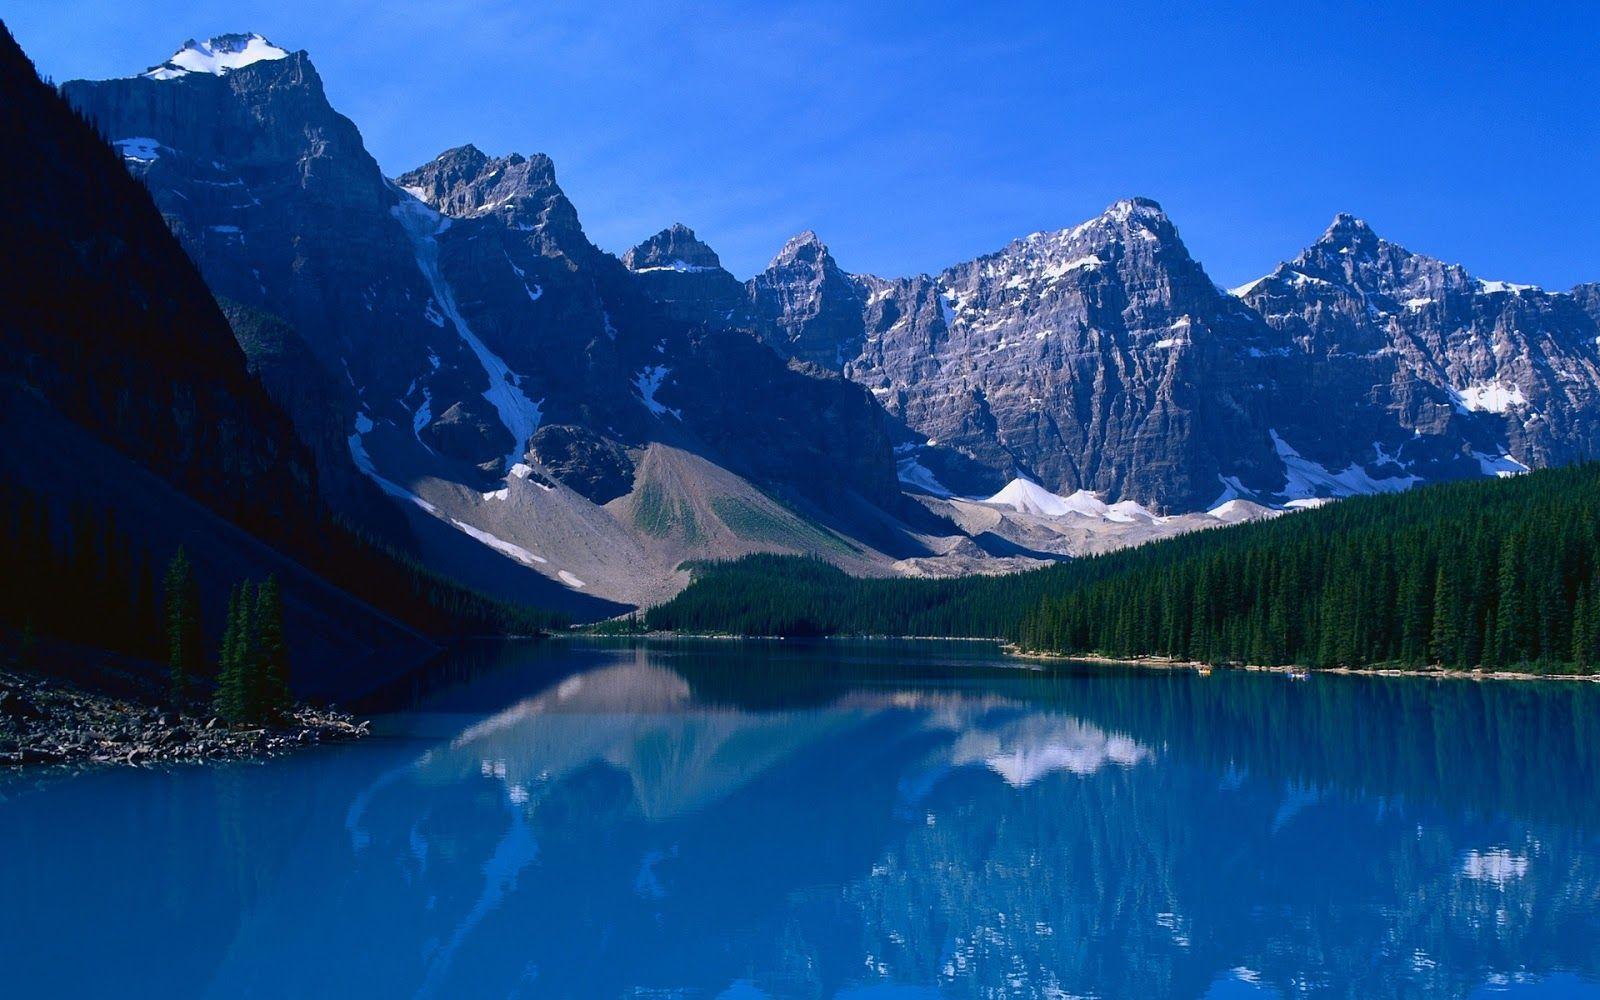 World Most Beautiful Lake Wallpaper. Most beautiful places